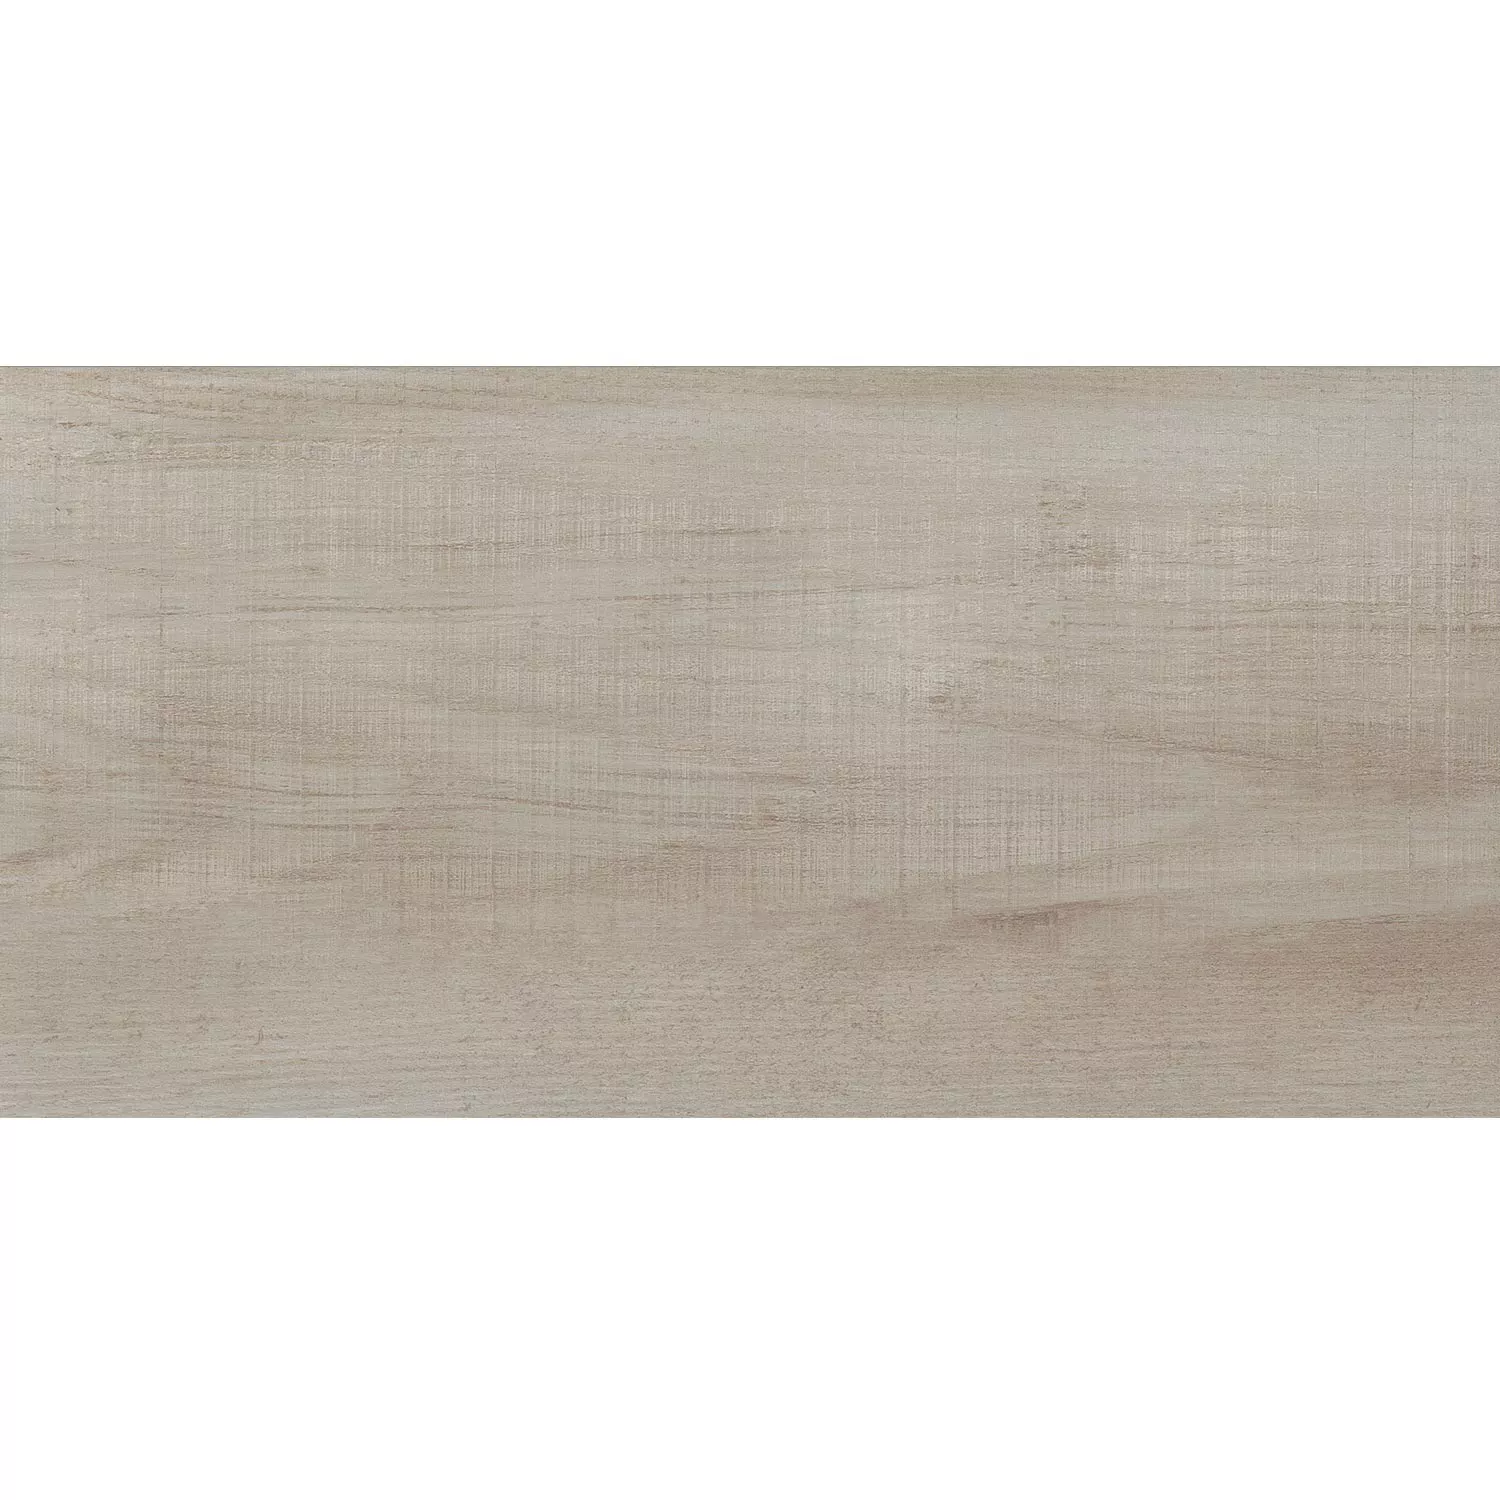 Płytki Podłogowe Wygląd Drewna Nikopol 30x60cm Biały